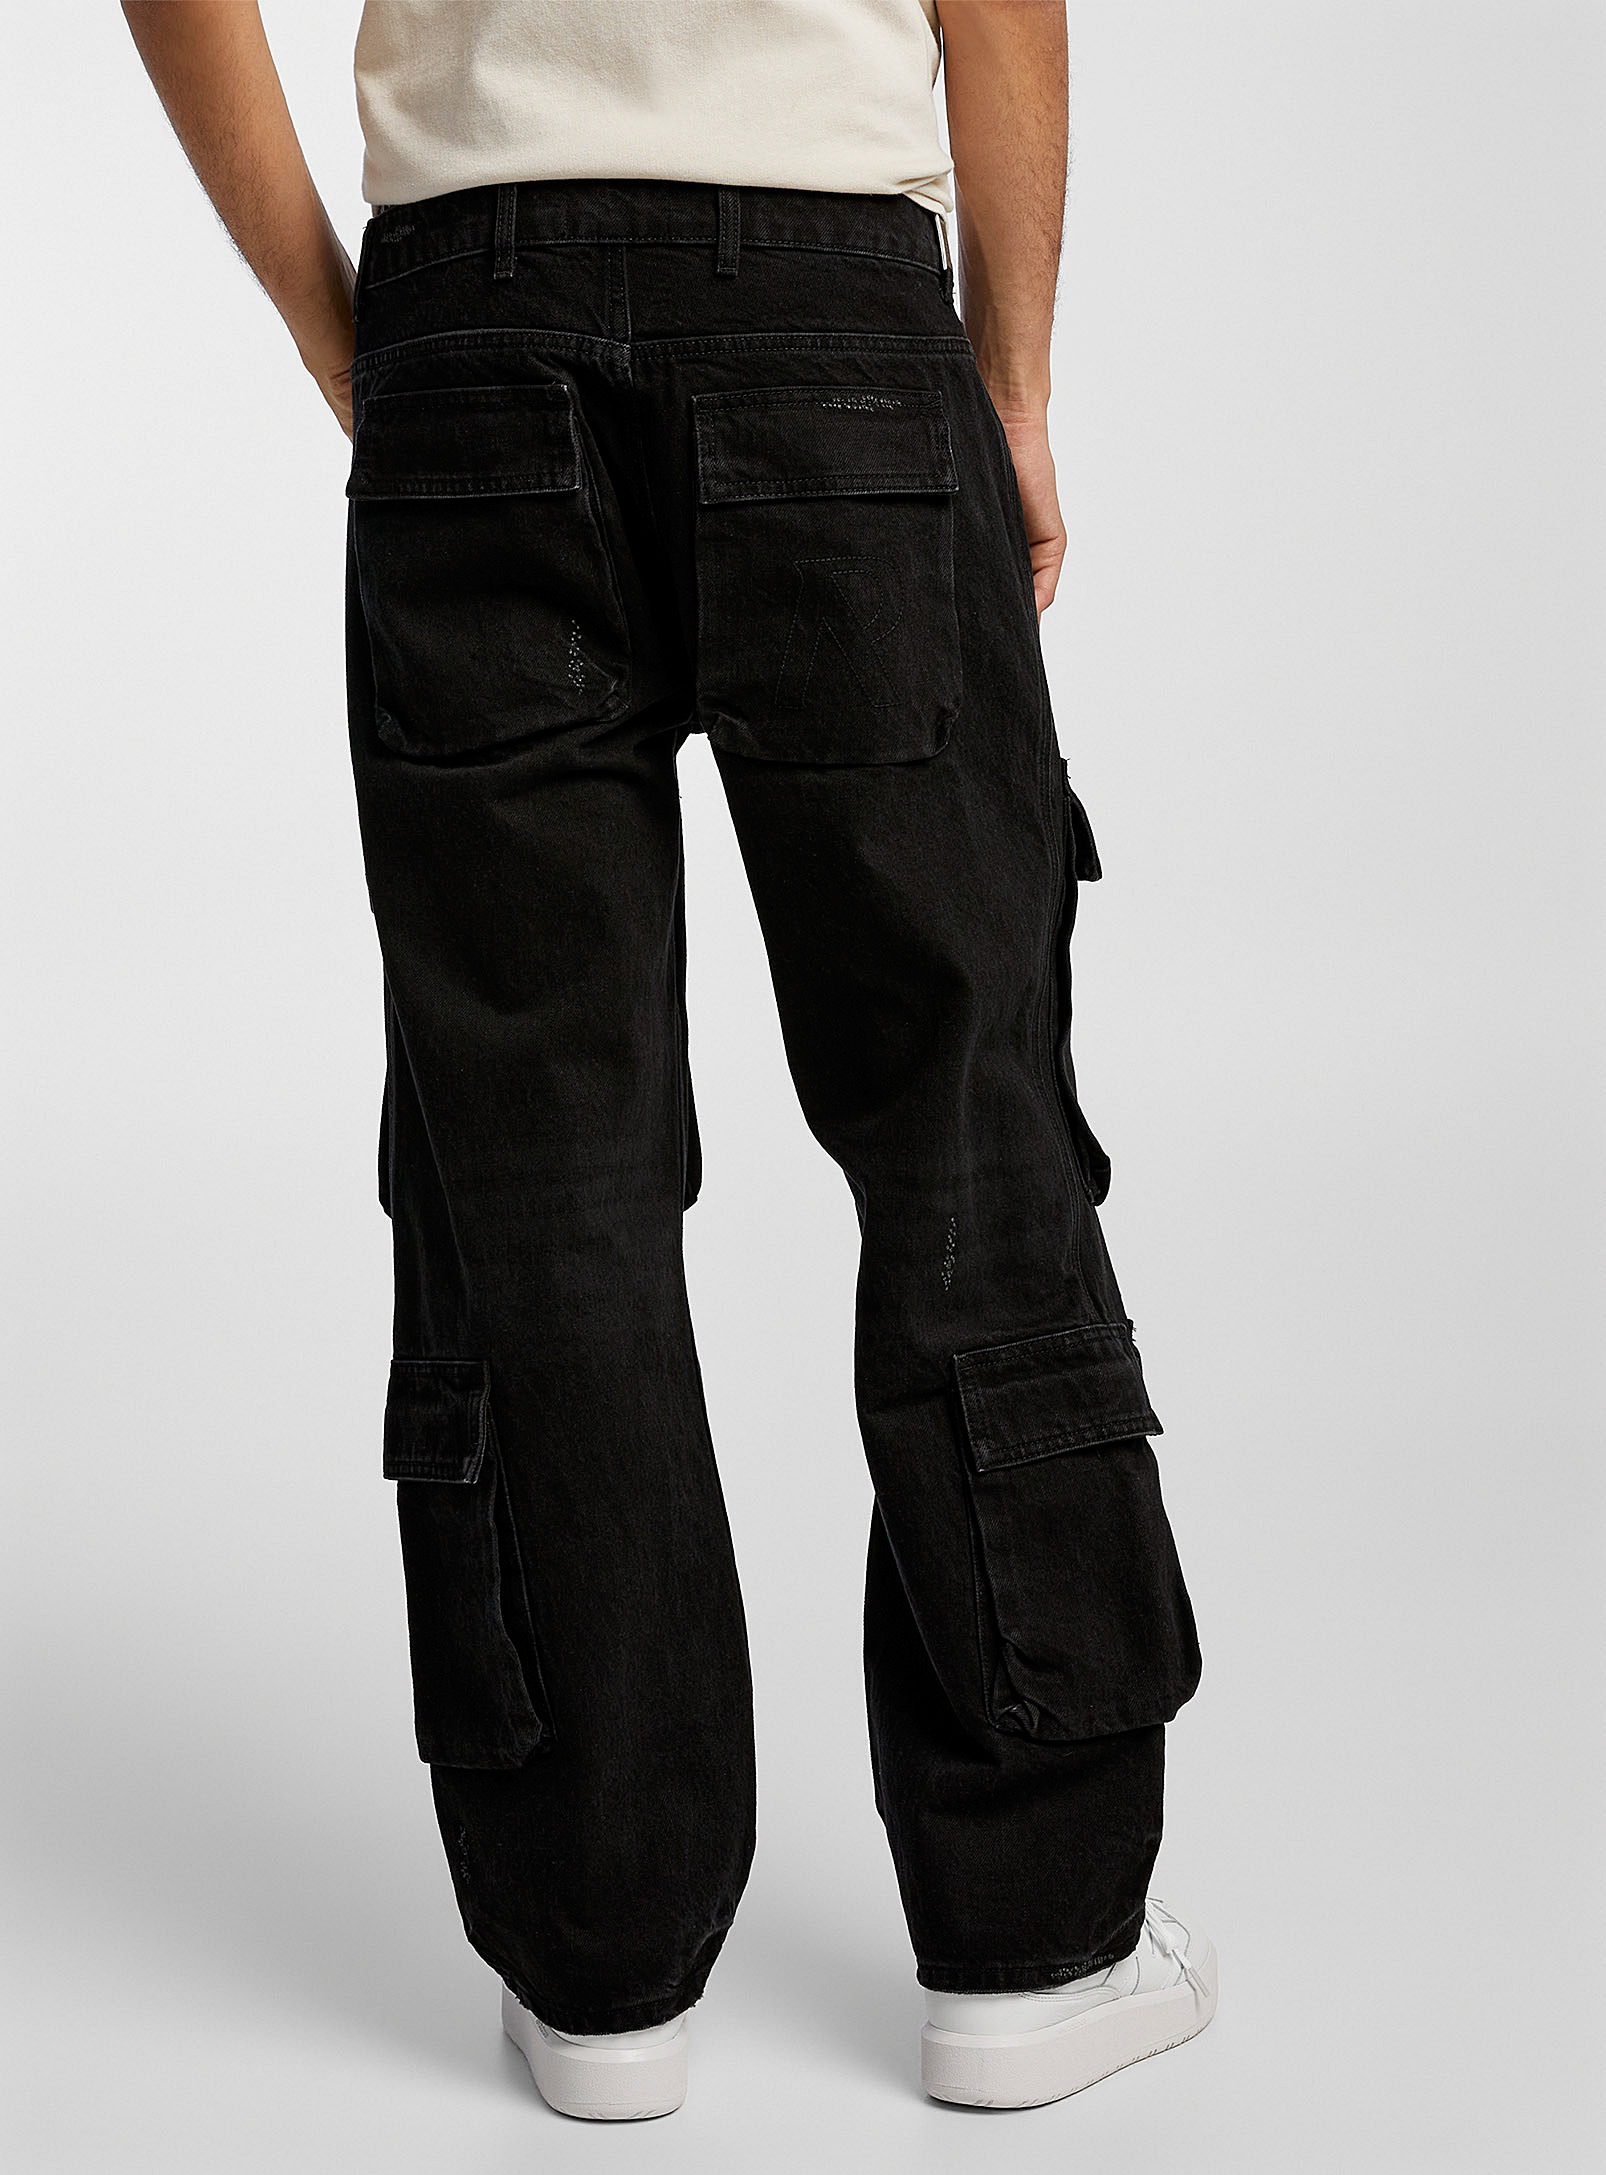 Represent - Le jean cargo R3 noir délavé Coupe relaxe